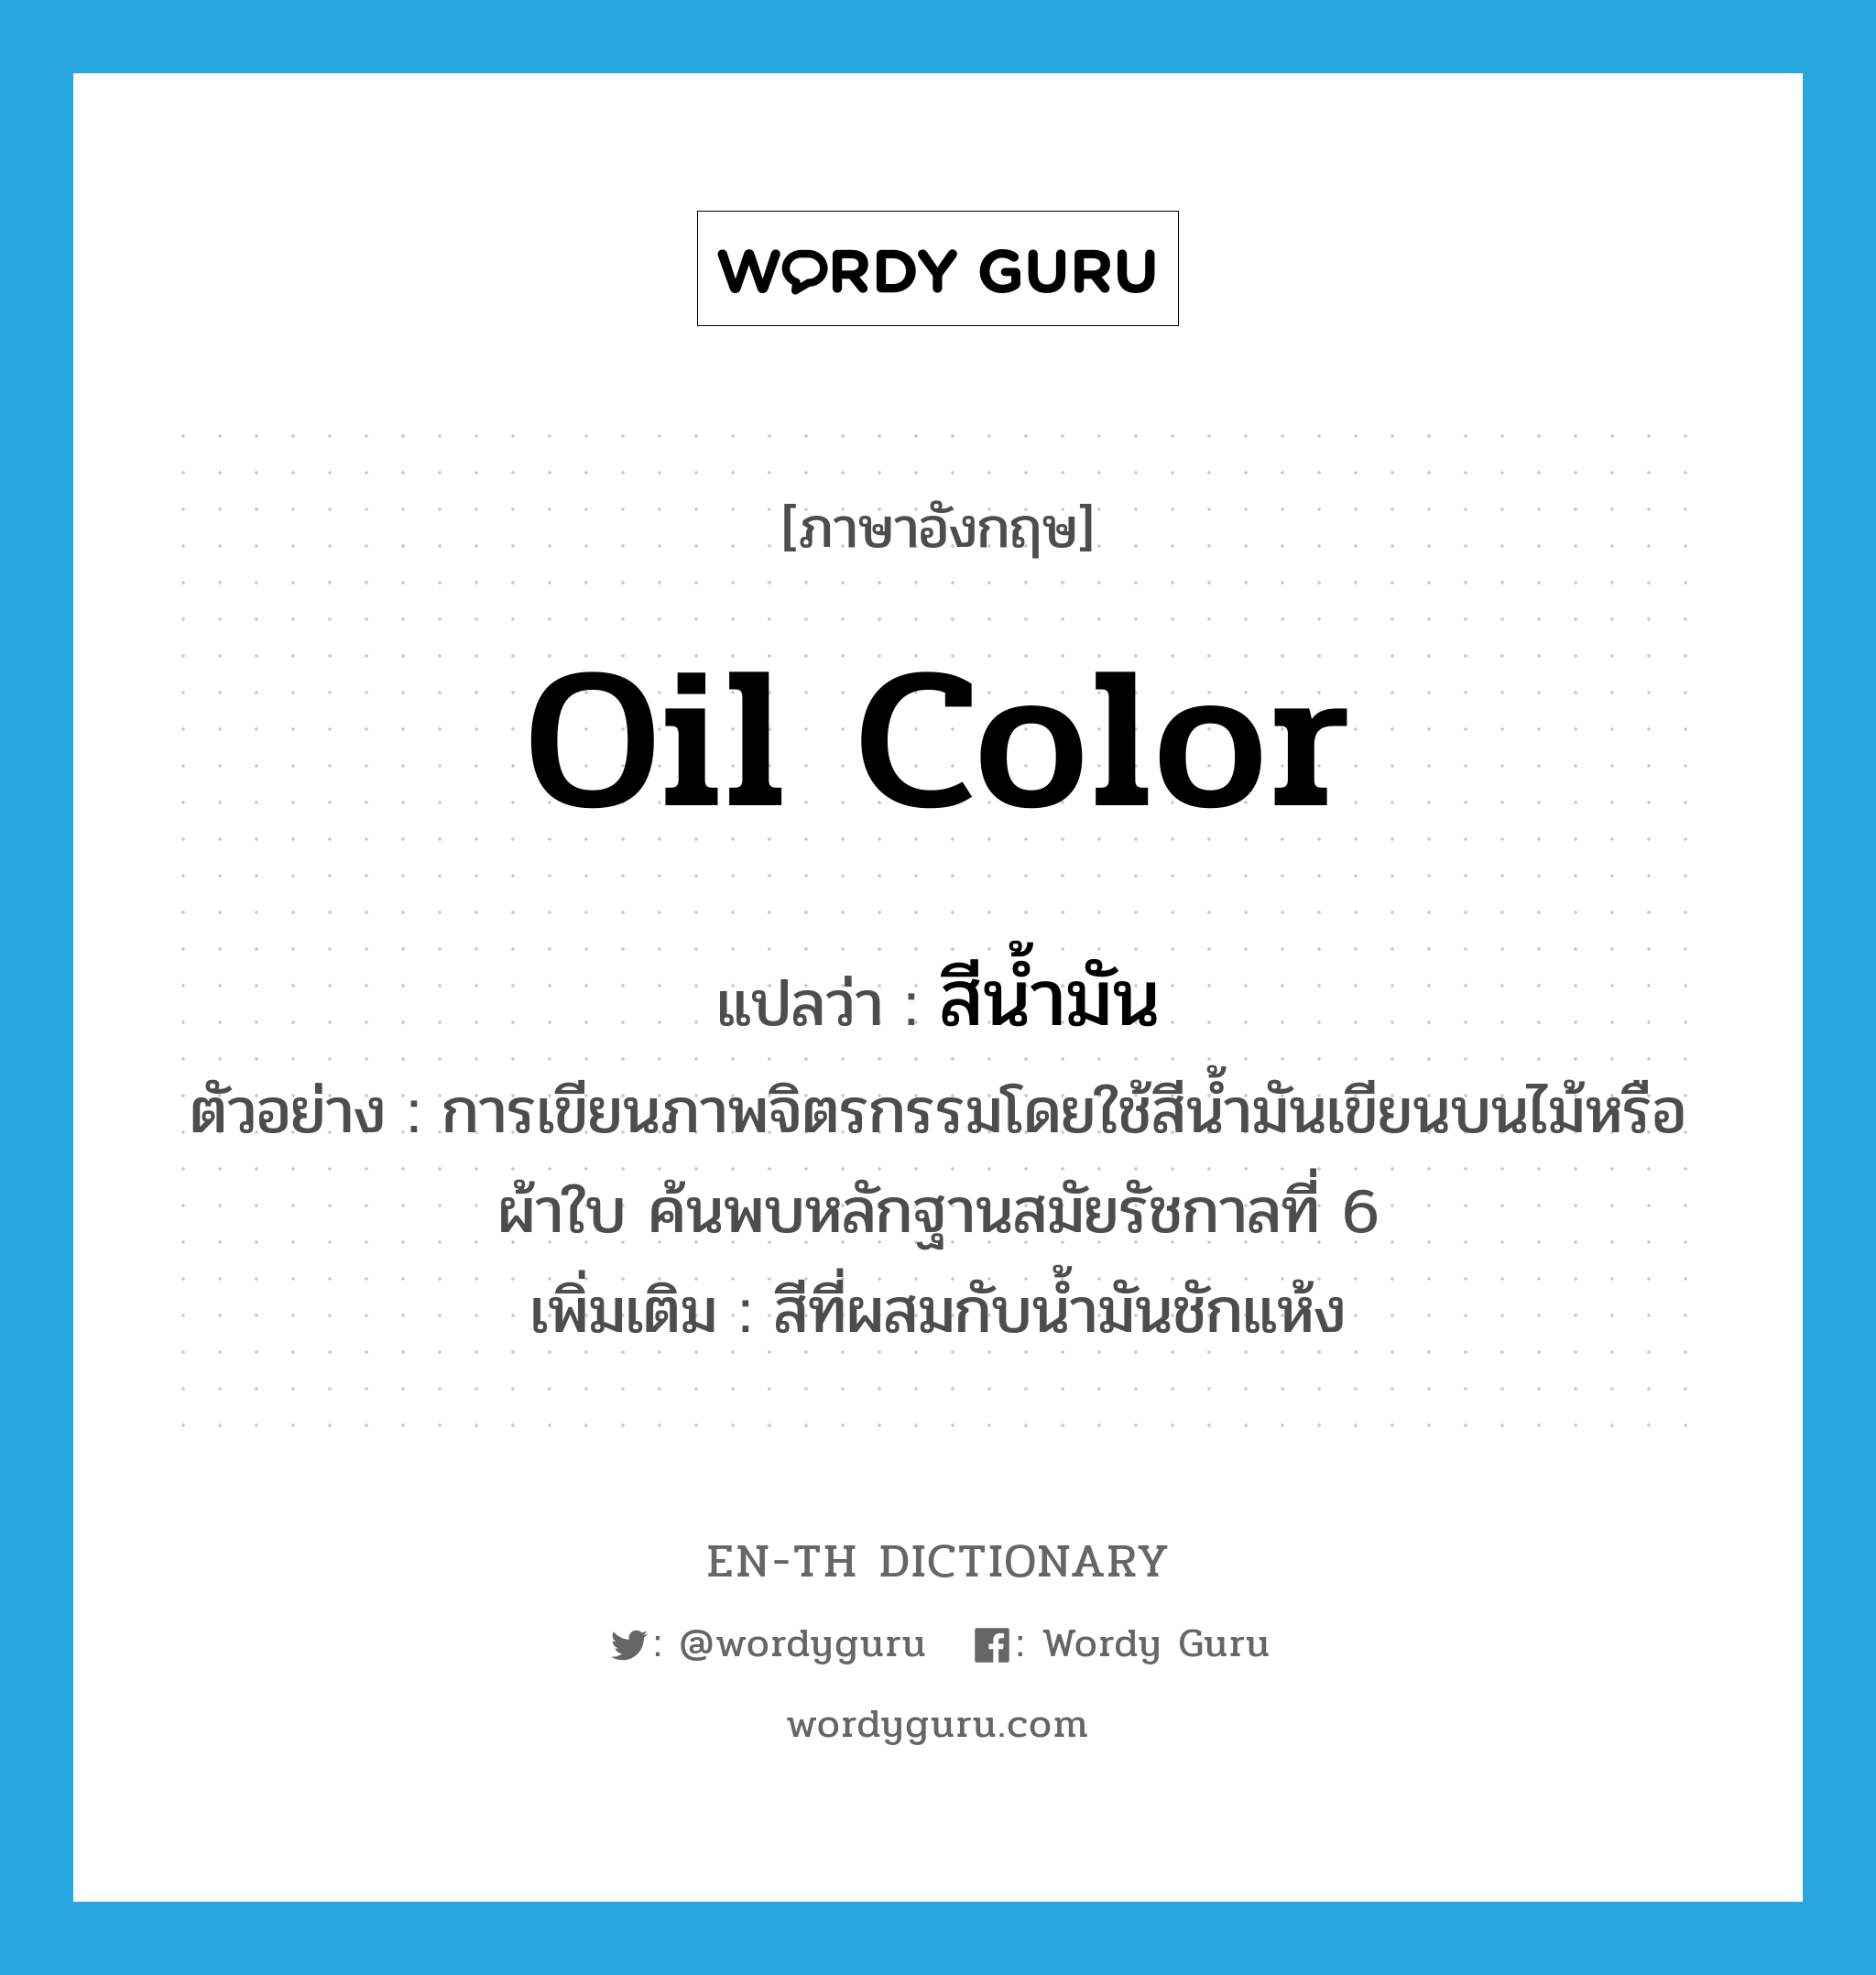 oil color แปลว่า?, คำศัพท์ภาษาอังกฤษ oil color แปลว่า สีน้ำมัน ประเภท N ตัวอย่าง การเขียนภาพจิตรกรรมโดยใช้สีน้ำมันเขียนบนไม้หรือผ้าใบ ค้นพบหลักฐานสมัยรัชกาลที่ 6 เพิ่มเติม สีที่ผสมกับน้ำมันชักแห้ง หมวด N